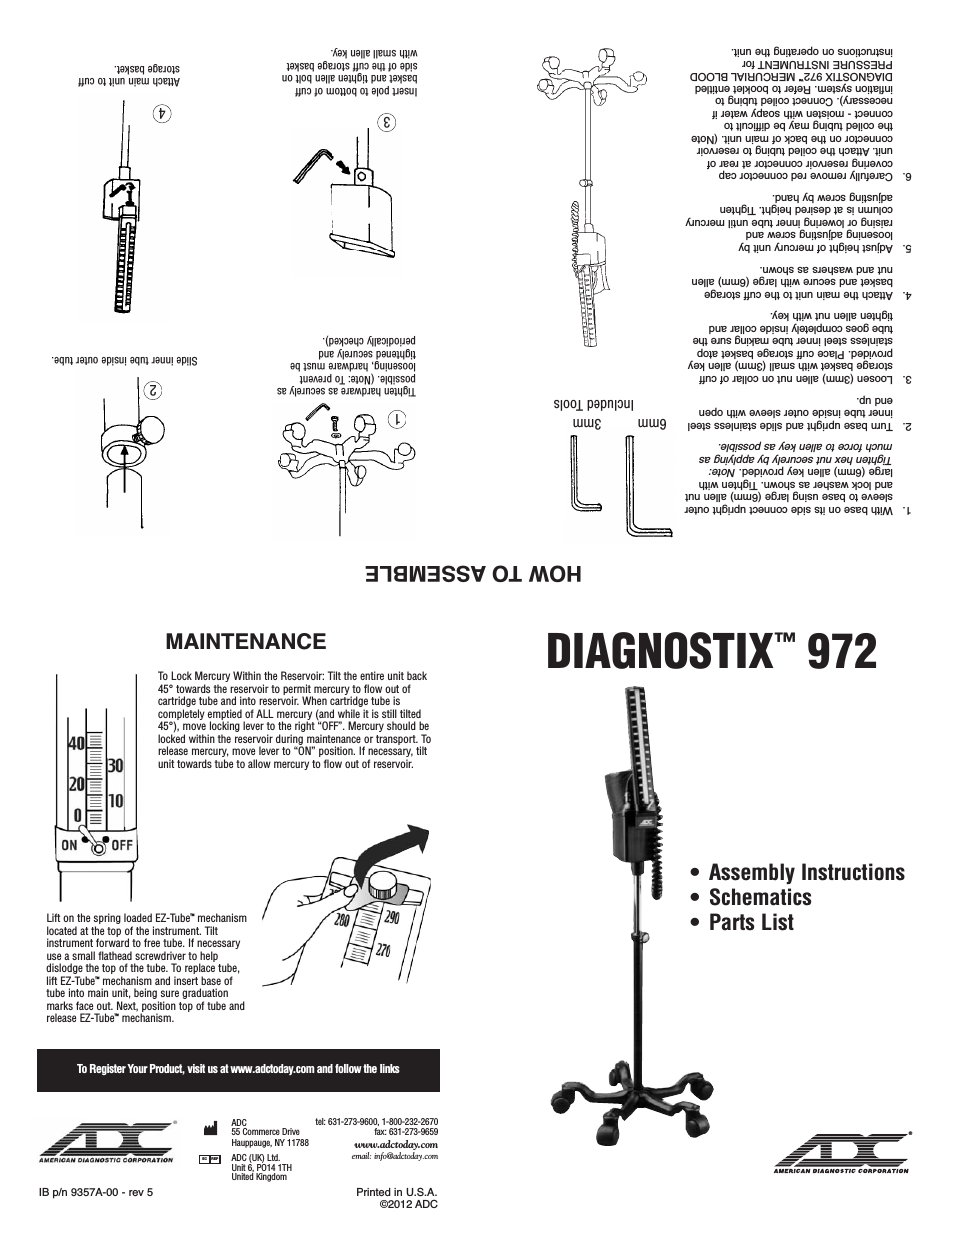 Diagnostix 972 Assembly